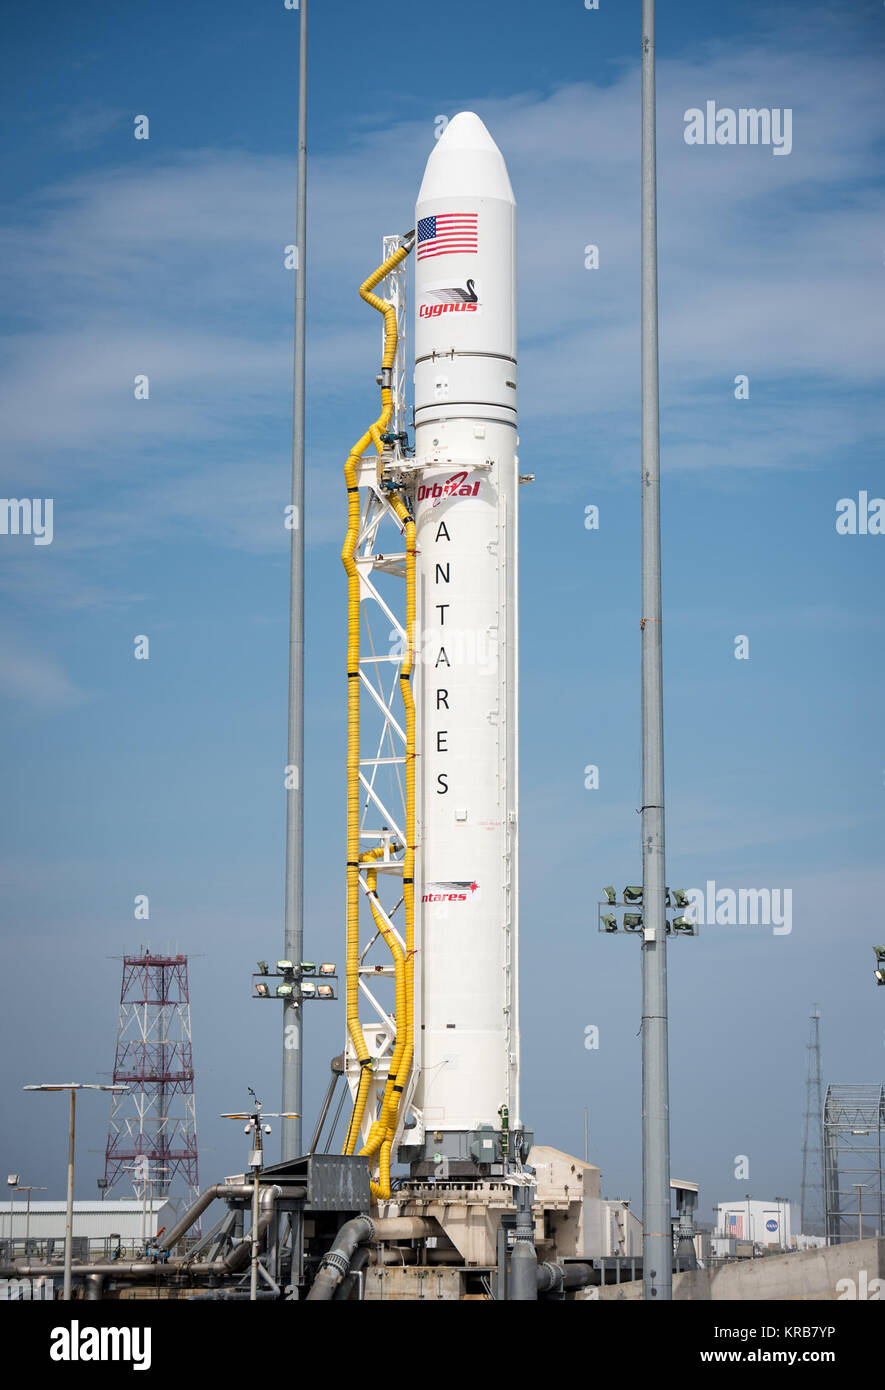 La Orbital Sciences Corporation Antares cohete es visto en el Mid-Atlantic Regional Spaceport (MARS) Pad-0A en las Instalaciones de Vuelo Wallops de la NASA, el viernes, 19 de abril de 2013 en Virginia. Socio comercial espacial de la NASA, Orbital Sciences Corporation, está programado para lanzar su primera prueba Antares el sábado, 20 de abril de 2013. Crédito de la foto: (NASA/Bill Ingalls) Antares a-uno vertical - Abril 20.2 Foto de stock